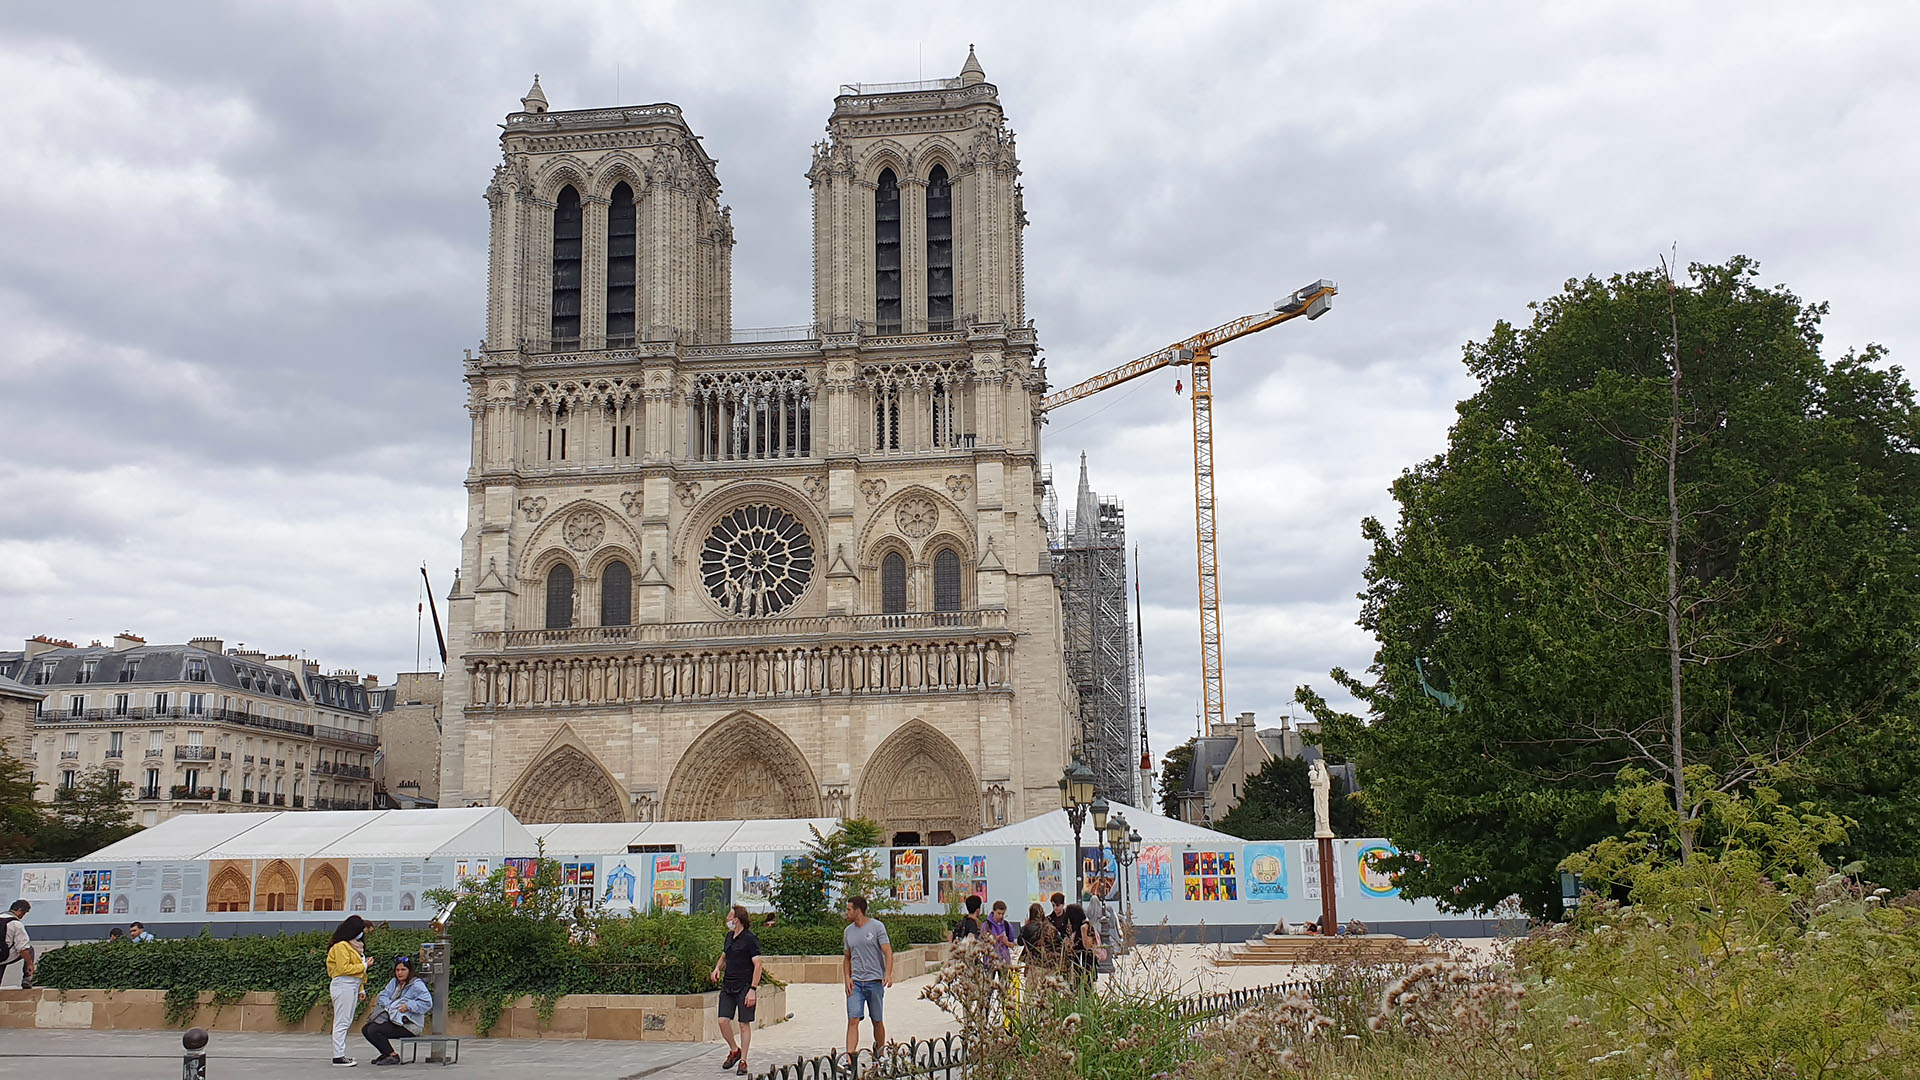 Notre-Dame de Paris le 3 juillet 2020. Suite à l'incendie d'avril 2019, les travaux de restauration se poursuivent | © Bernard Hallet